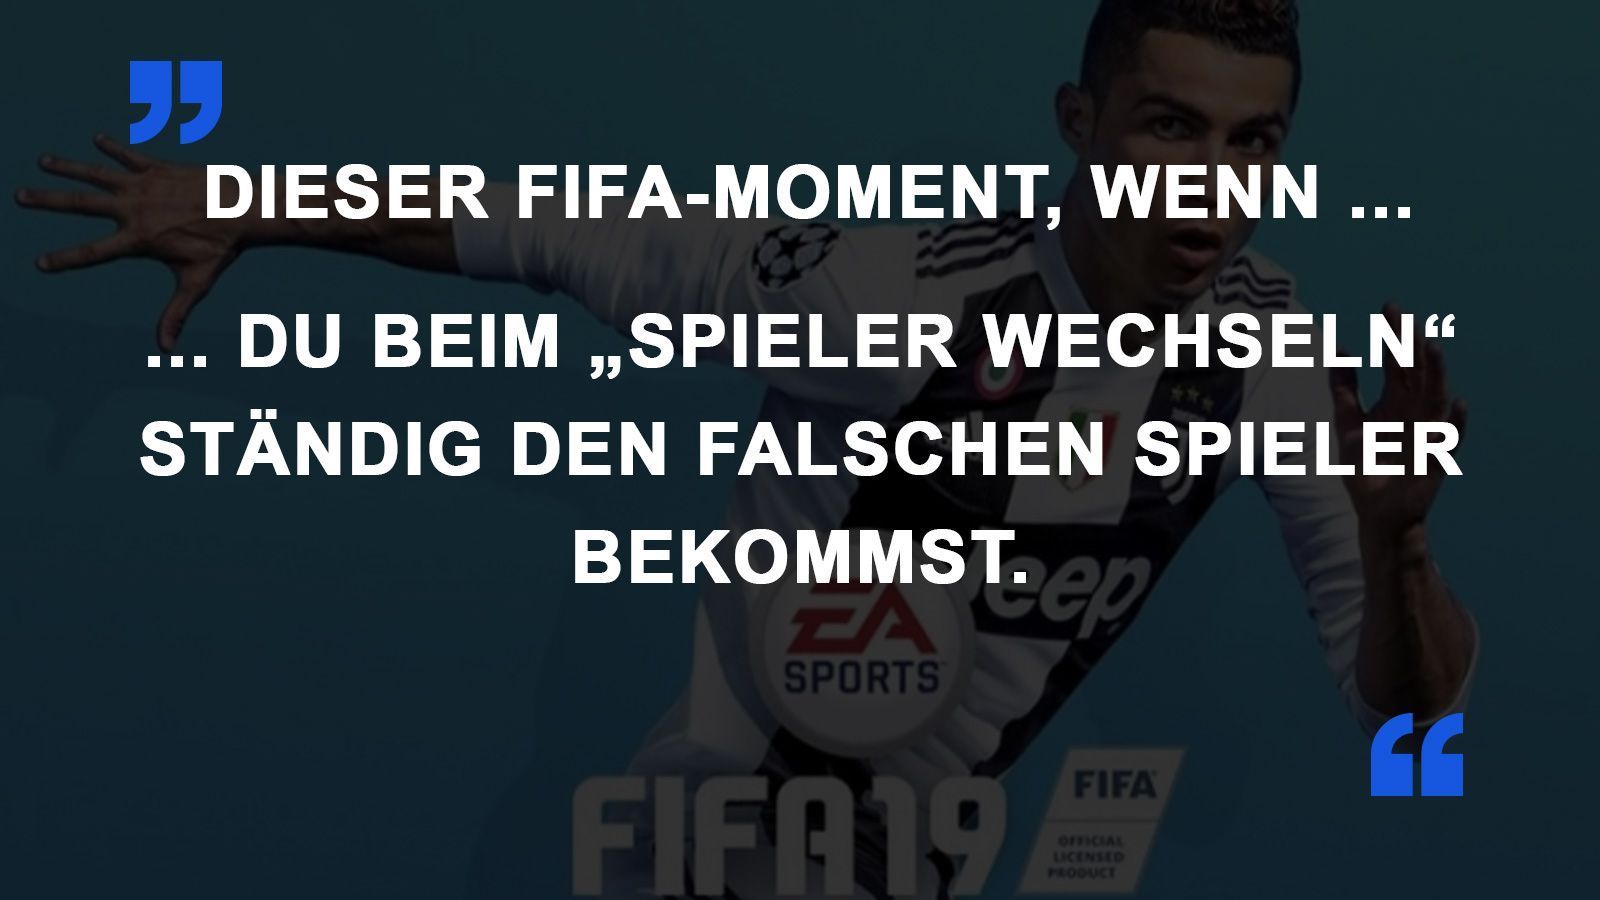 
                <strong>FIFA Momente falscher Spieler</strong><br>
                
              